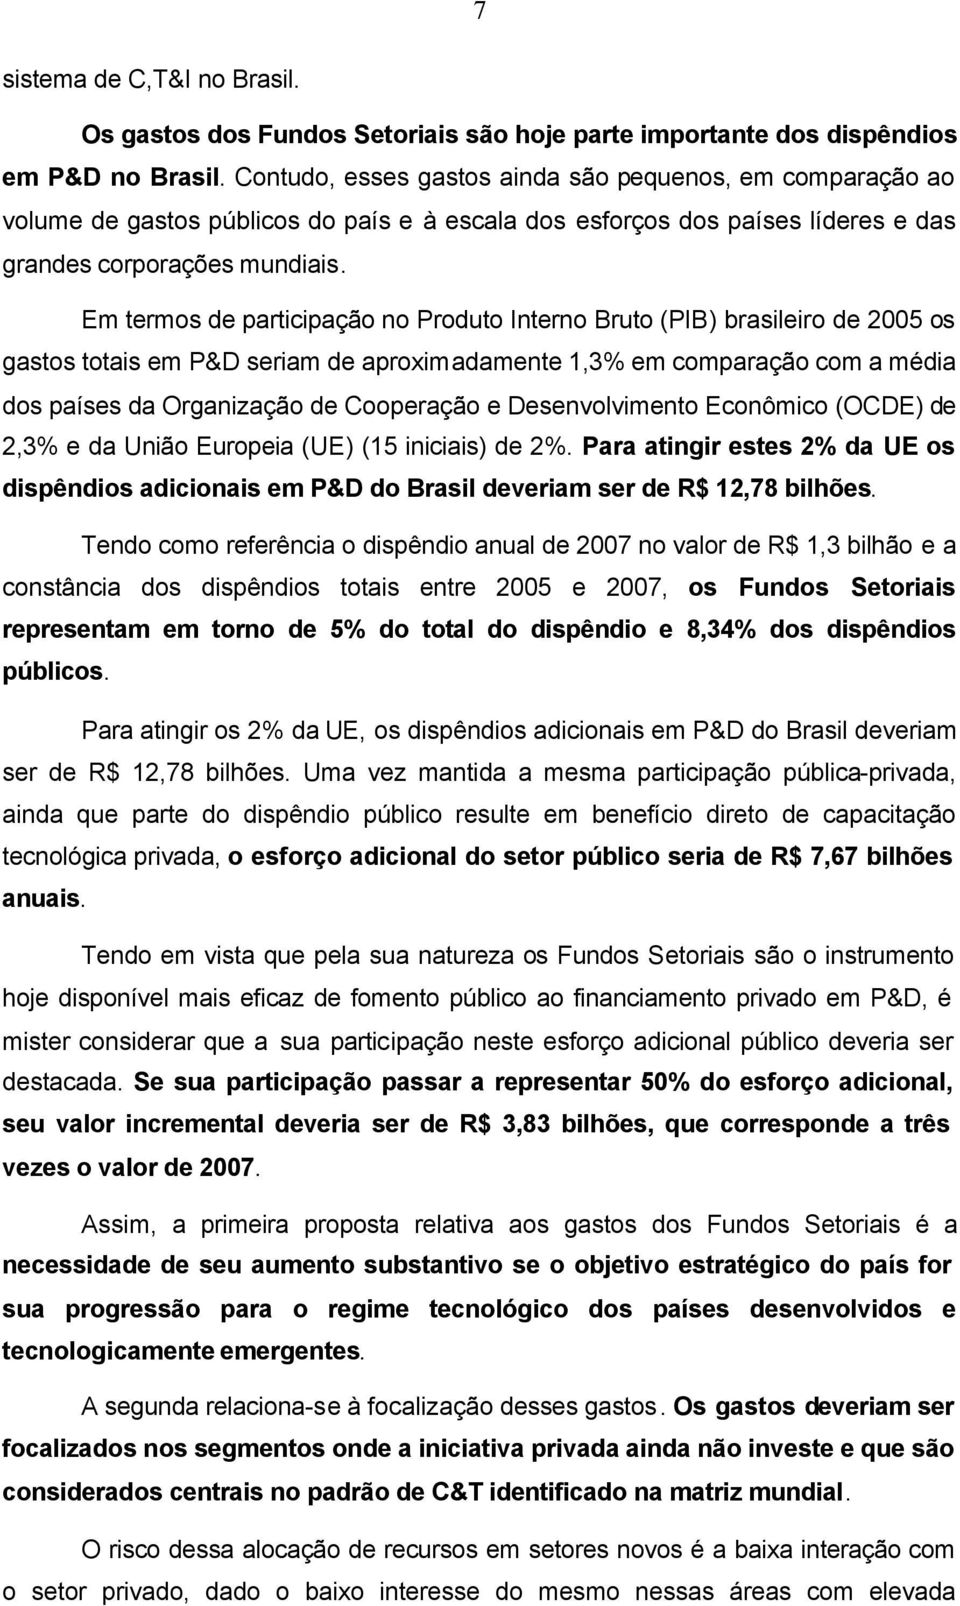 Em termos de participação no Produto Interno Bruto (PIB) brasileiro de 2005 os gastos totais em P&D seriam de aproximadamente 1,3% em comparação com a média dos países da Organização de Cooperação e